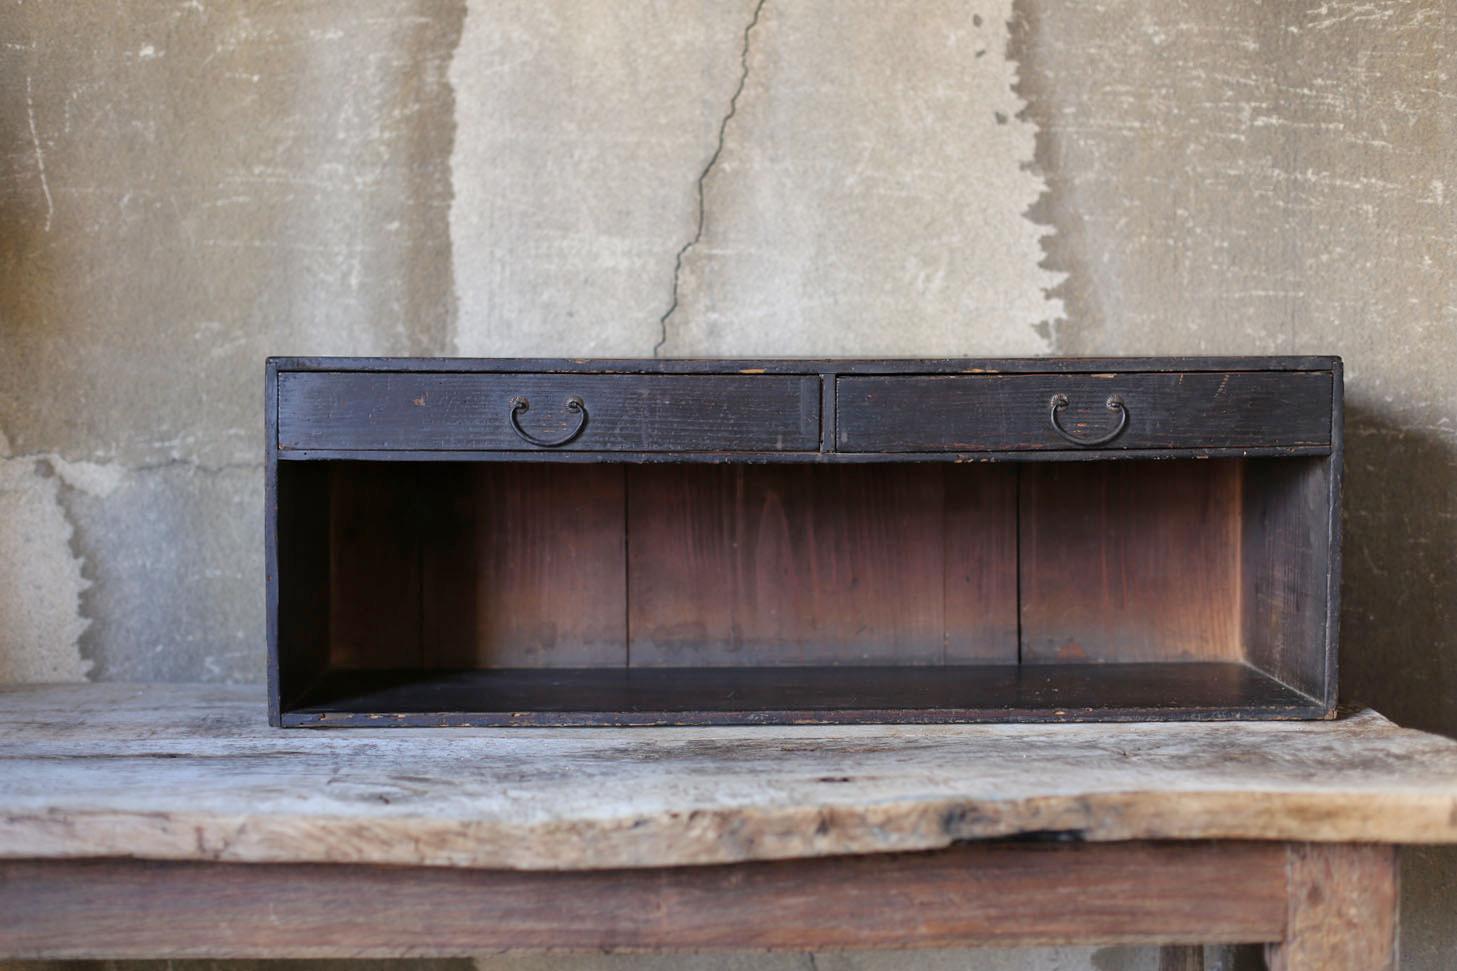 Il s'agit d'un tiroir en bois fabriqué au Japon au cours des périodes Meiji et Taisho (1868-1920).
Il aurait également été utilisé comme bureau bas. À l'époque moderne, il pourrait être utilisé très joliment comme présentoir bas. Par rapport à